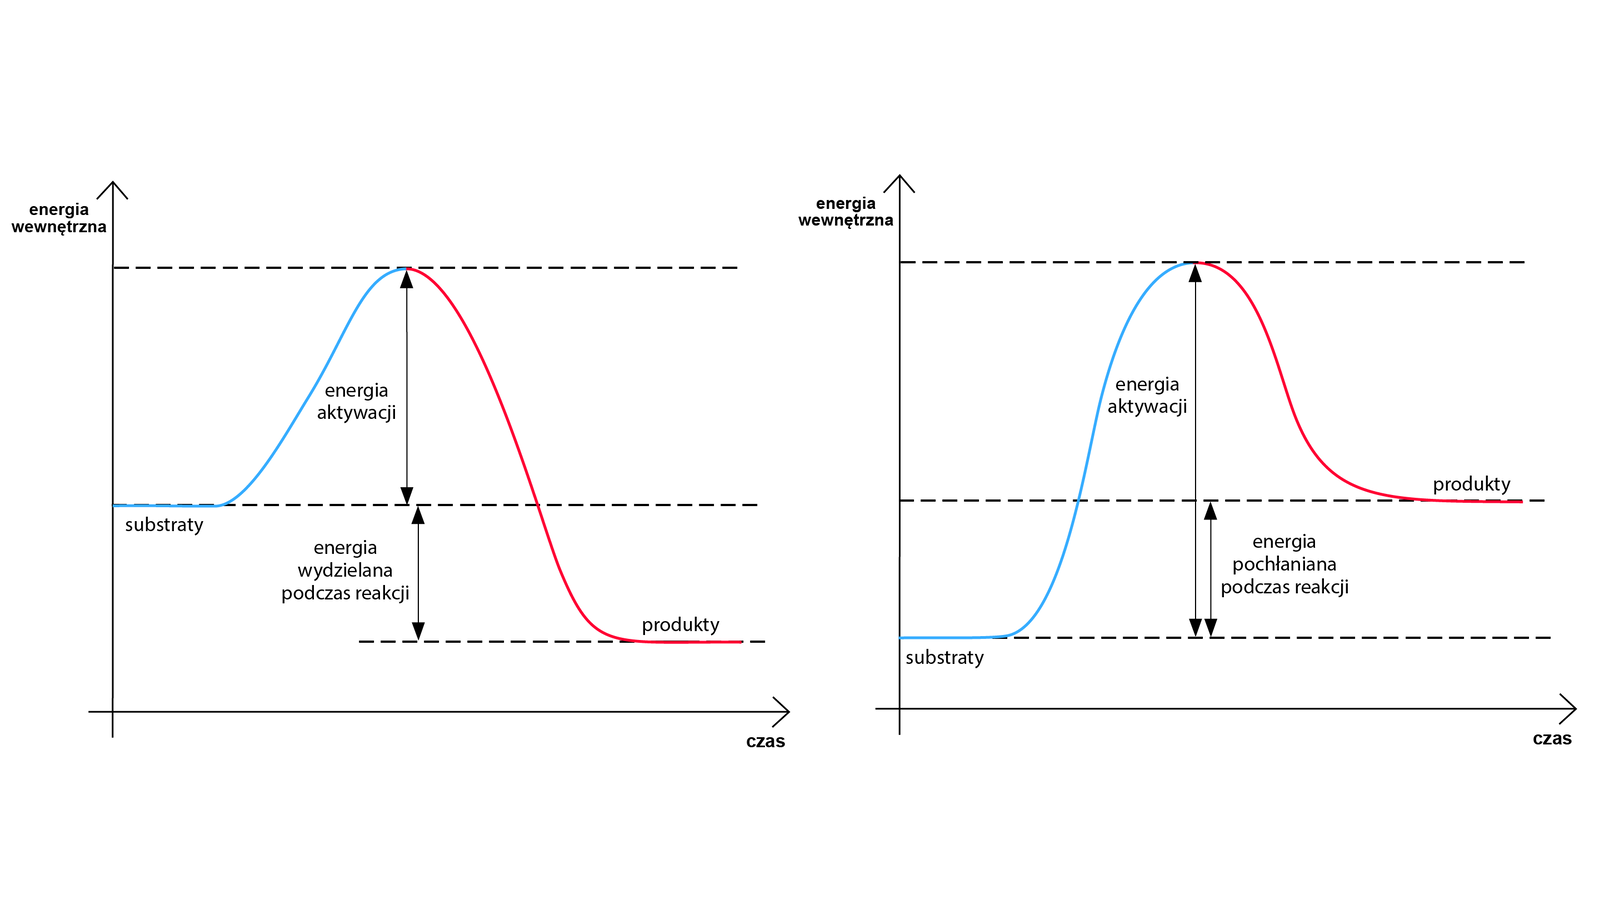 Na ilustracji są dwa wykresy zależności energii wewnętrznej (oś Y) od czasu (oś X). Na pierwszym wykresie krzywa rozpoczyna się nieco poniżej połowy długości osi Y. Początek krzywej biegnie równolegle do osi X - to substraty. Następnie wznosi się i opada poniżej poziomu substratów. Końcowa część krzywej prowadzi równolegle do osi X - to produkty. Od poziomu substratów do maksimum krzywej zaznaczono energię aktywacji. Odległość od substratów do krzywej oznaczającej produkty opisano jako energię wydzieloną podczas reakcji. Na drugim wykresie początek krzywej jest nieco powyżej początku osi Y. Początkowy odcinek krzywej biegnie równolegle do osi X - to substraty. Następnie krzywa wznosi się i opada powyżej poziomu substratów, mniej więcej w połowie osi Y. Końcowa część krzywej prowadzi równolegle do osi X - to produkty. Od poziomu substratów, przez maksimum, do poziomu produktów zaznaczono energię aktywacji. Odległość od poziomu produktów do poziomu substratów opisano jako energię pochłanianą podczas reakcji.     